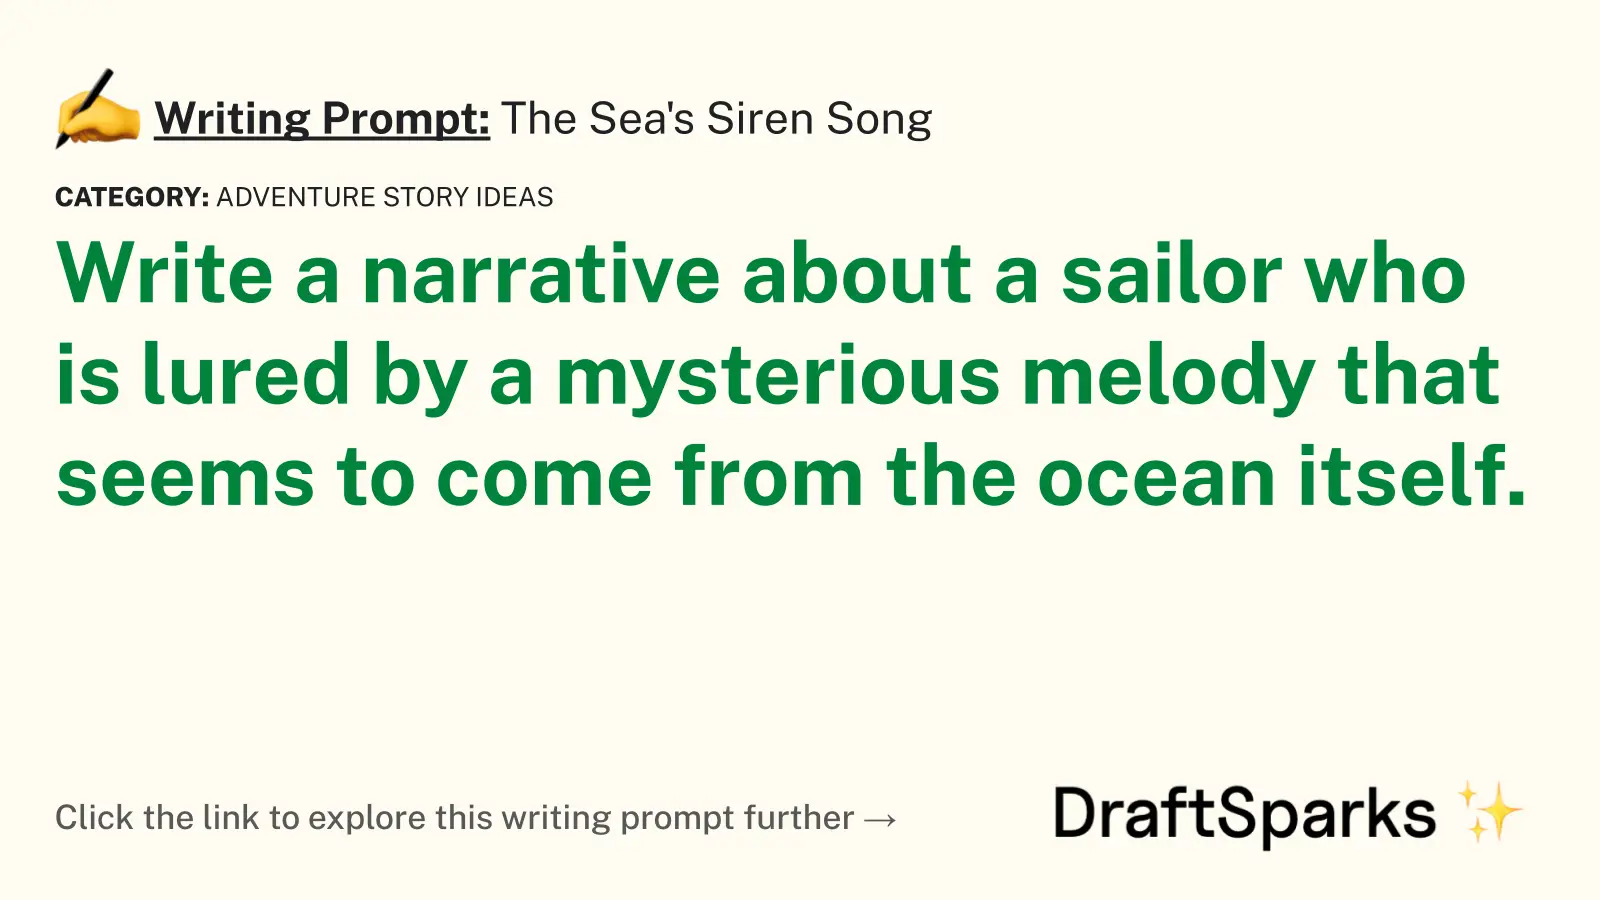 The Sea’s Siren Song